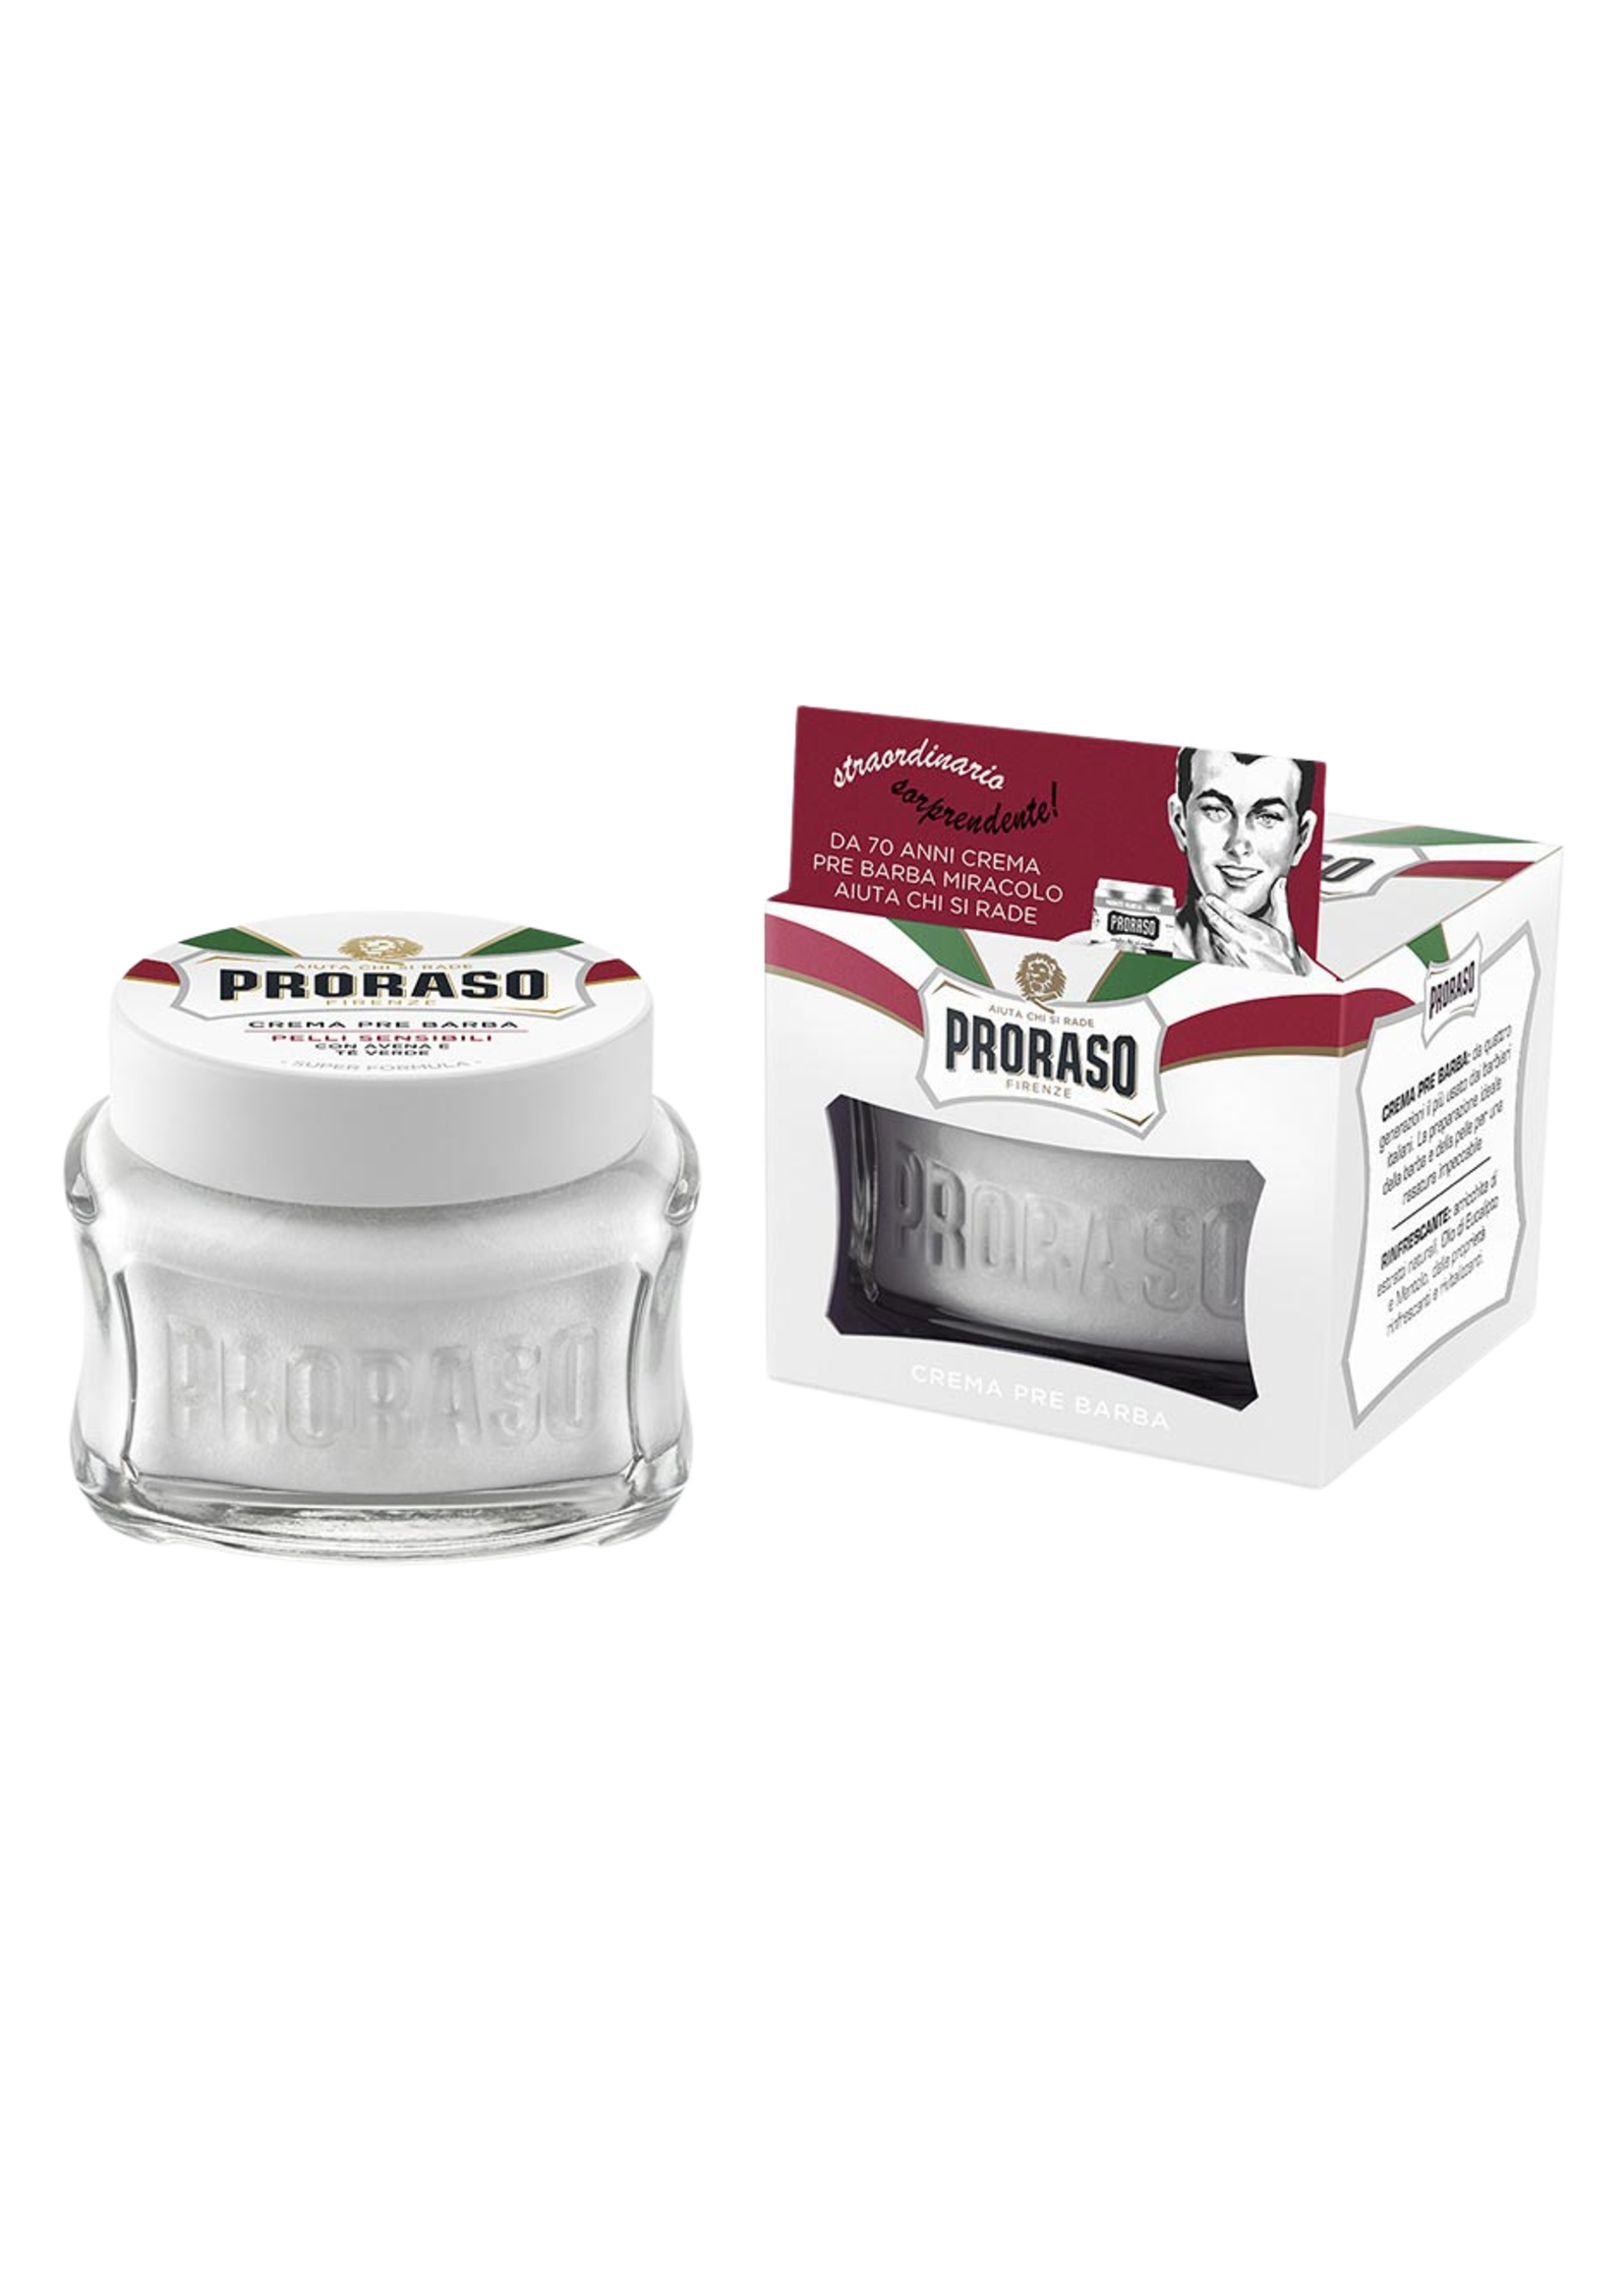 Proraso Proraso Pre-shave Cream Sensitive 100ml